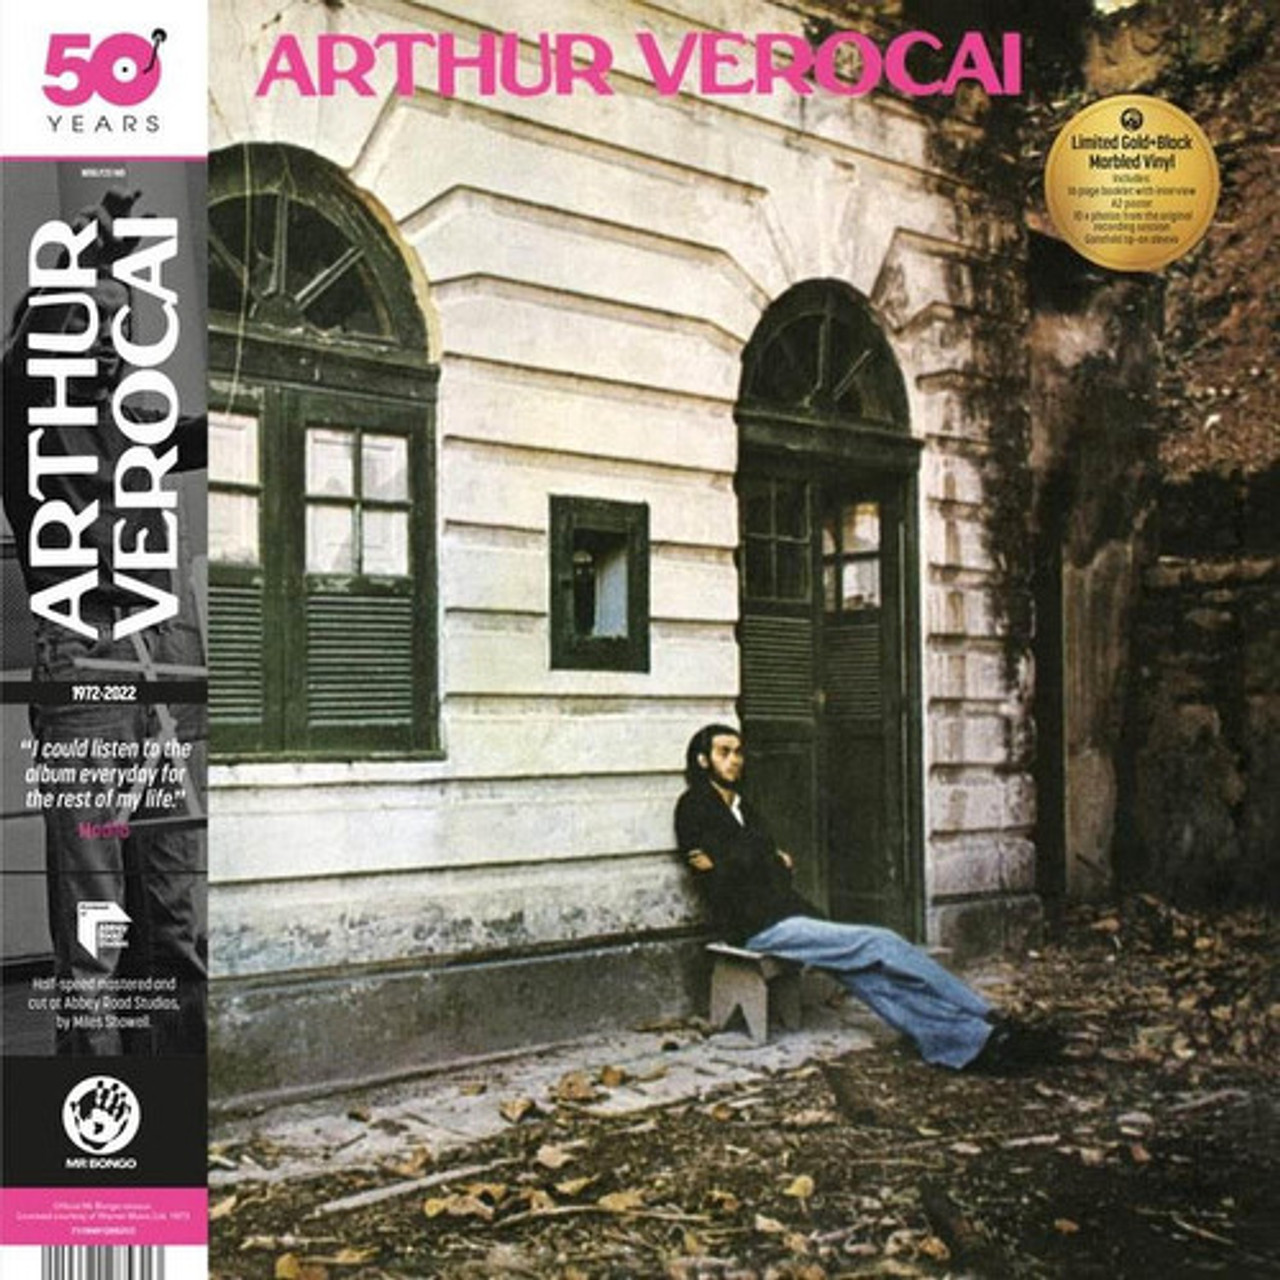 Mochilla Presents Timeless: Arthur Verocai Vinyl